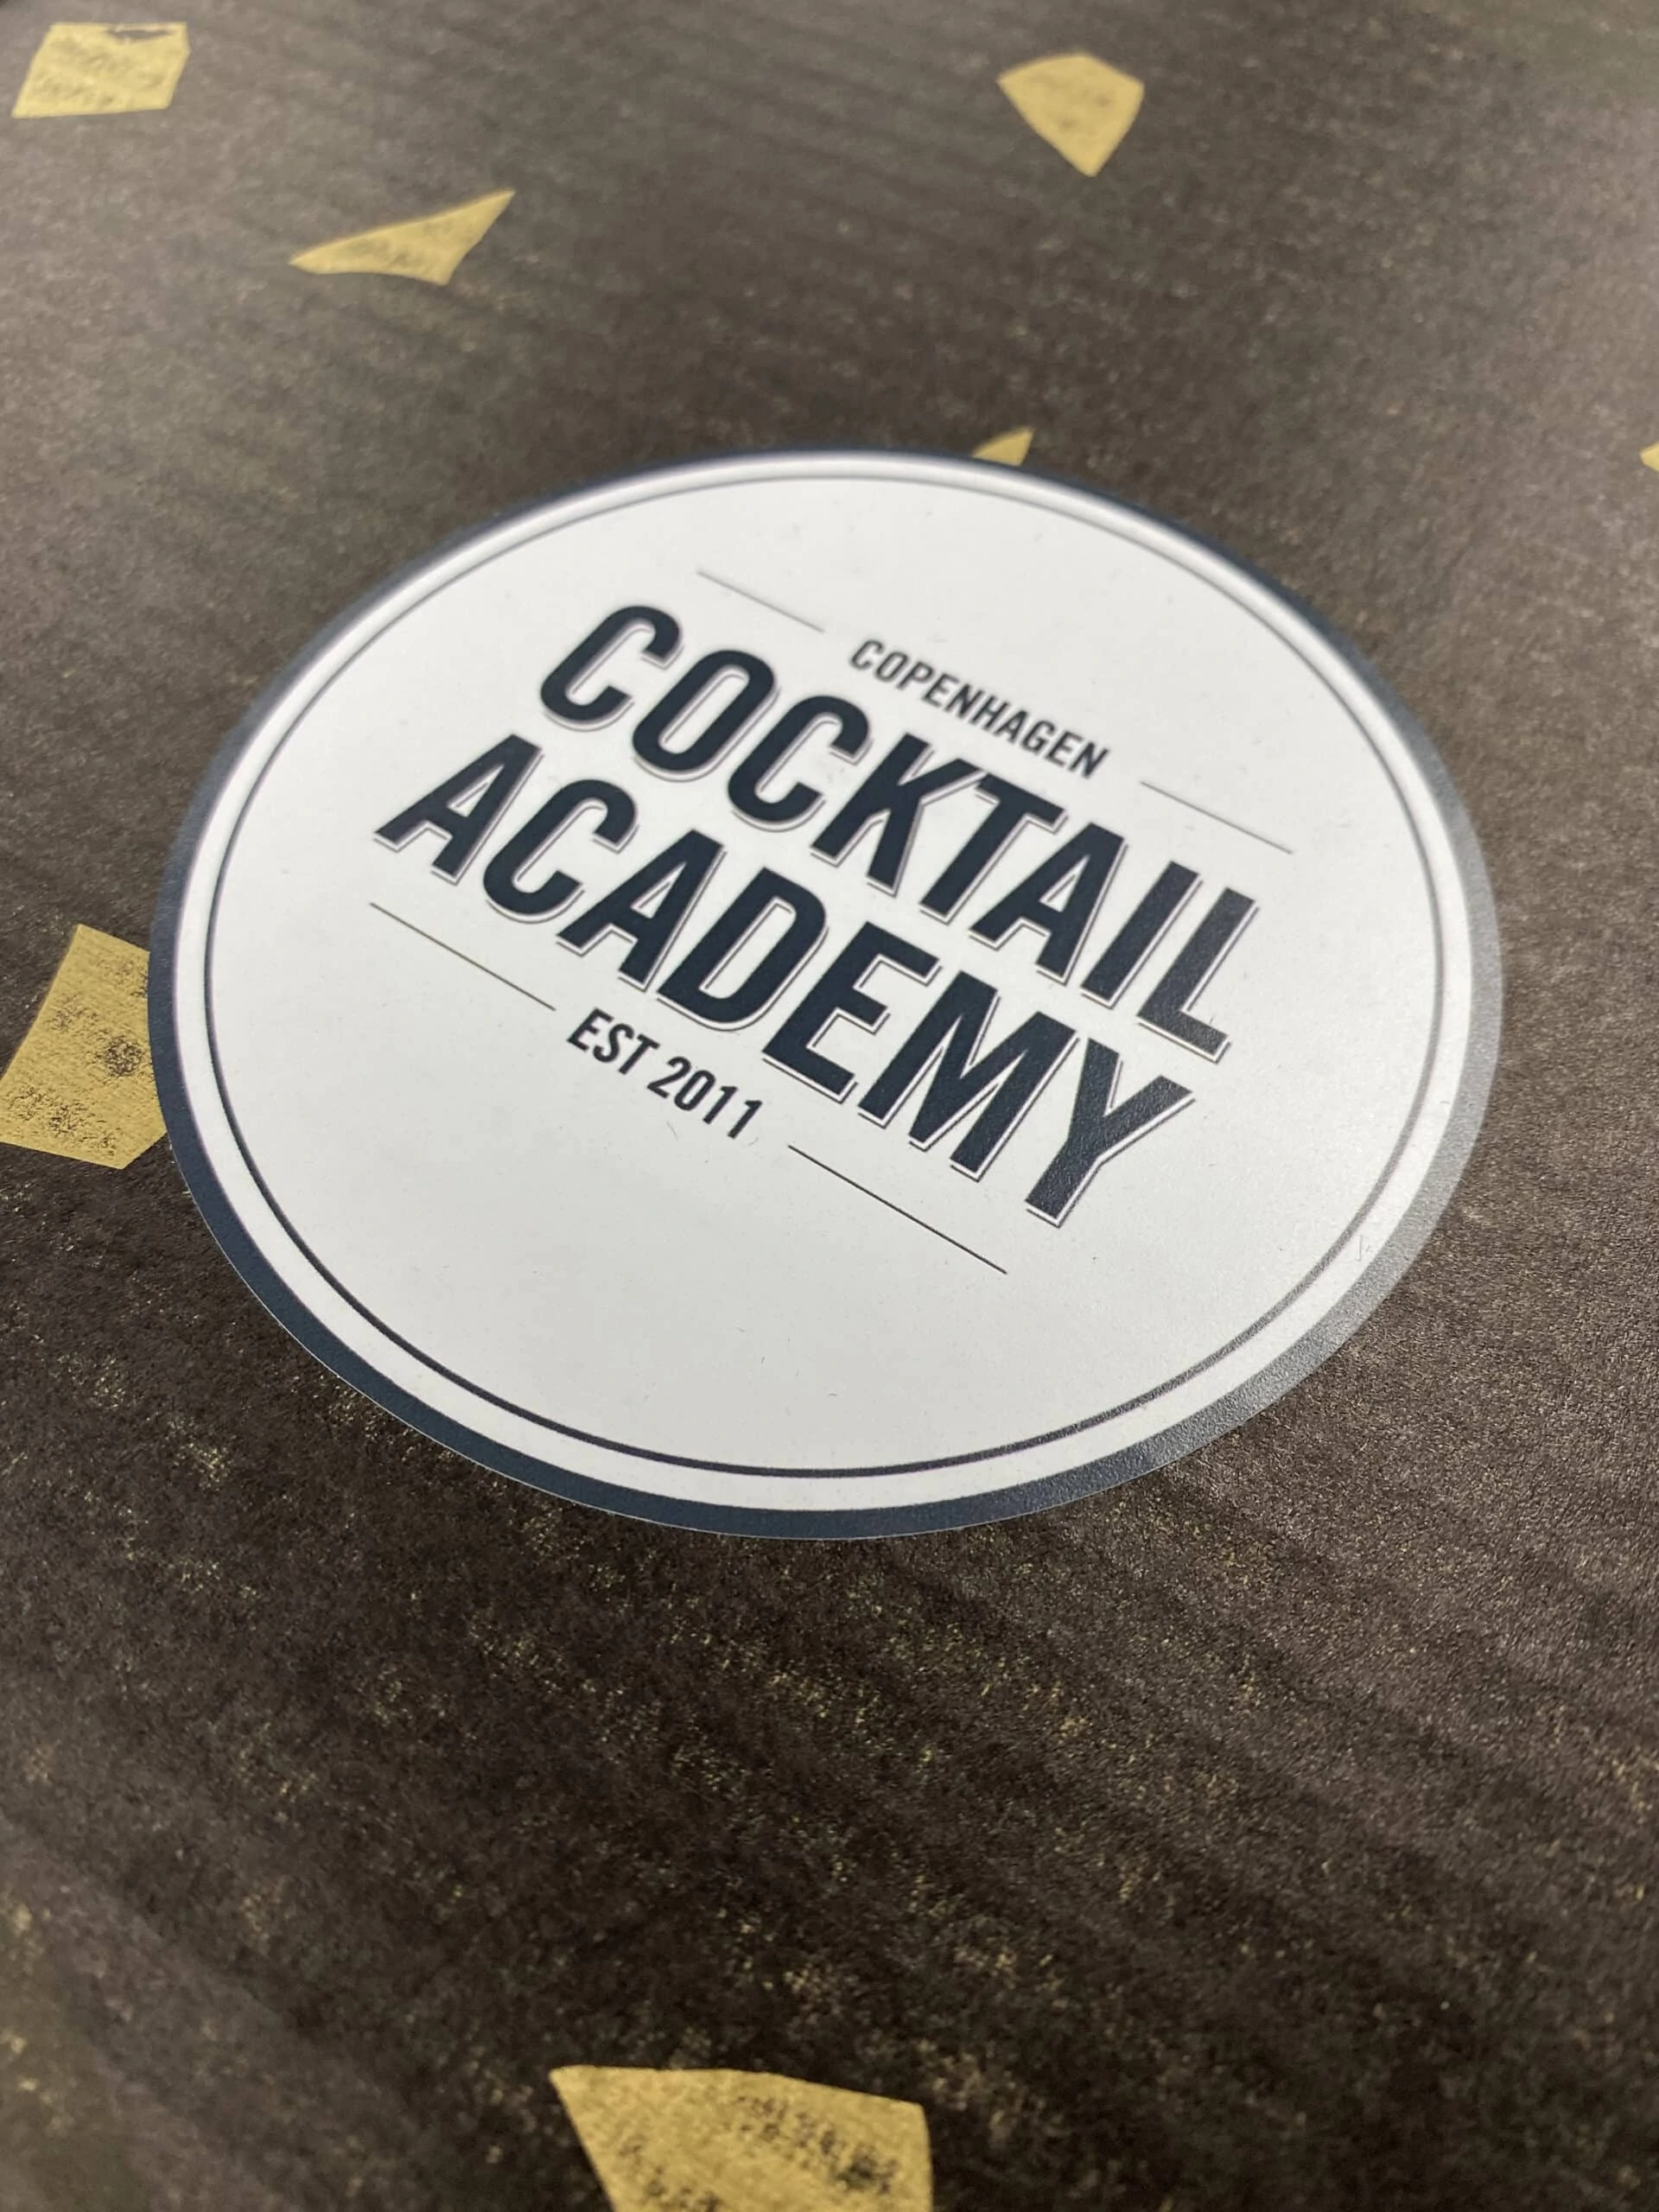 Cocktailpakke fra Copenhagen Cocktail Academy til Virtuel og Online portvinscocktail- og smagning